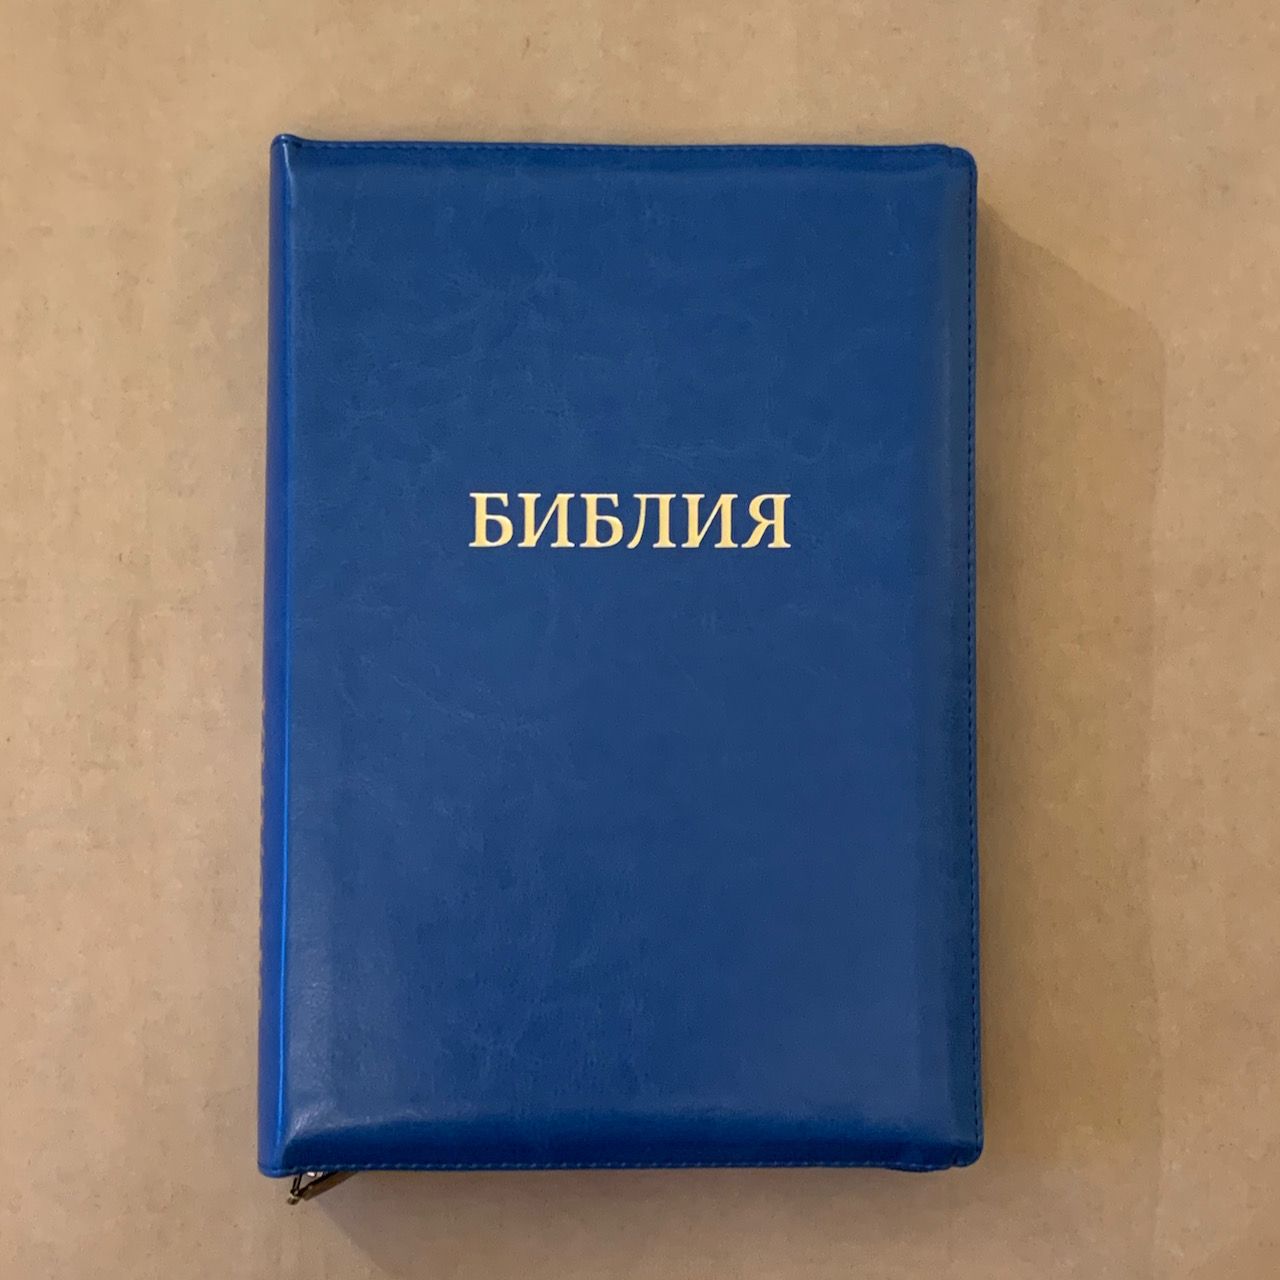 Библия 077zti формат, переплет из искусственной кожи на молнии с индексами, цвет синий светлый, большой формат, 180*260 мм, цветные карты, крупный шрифт